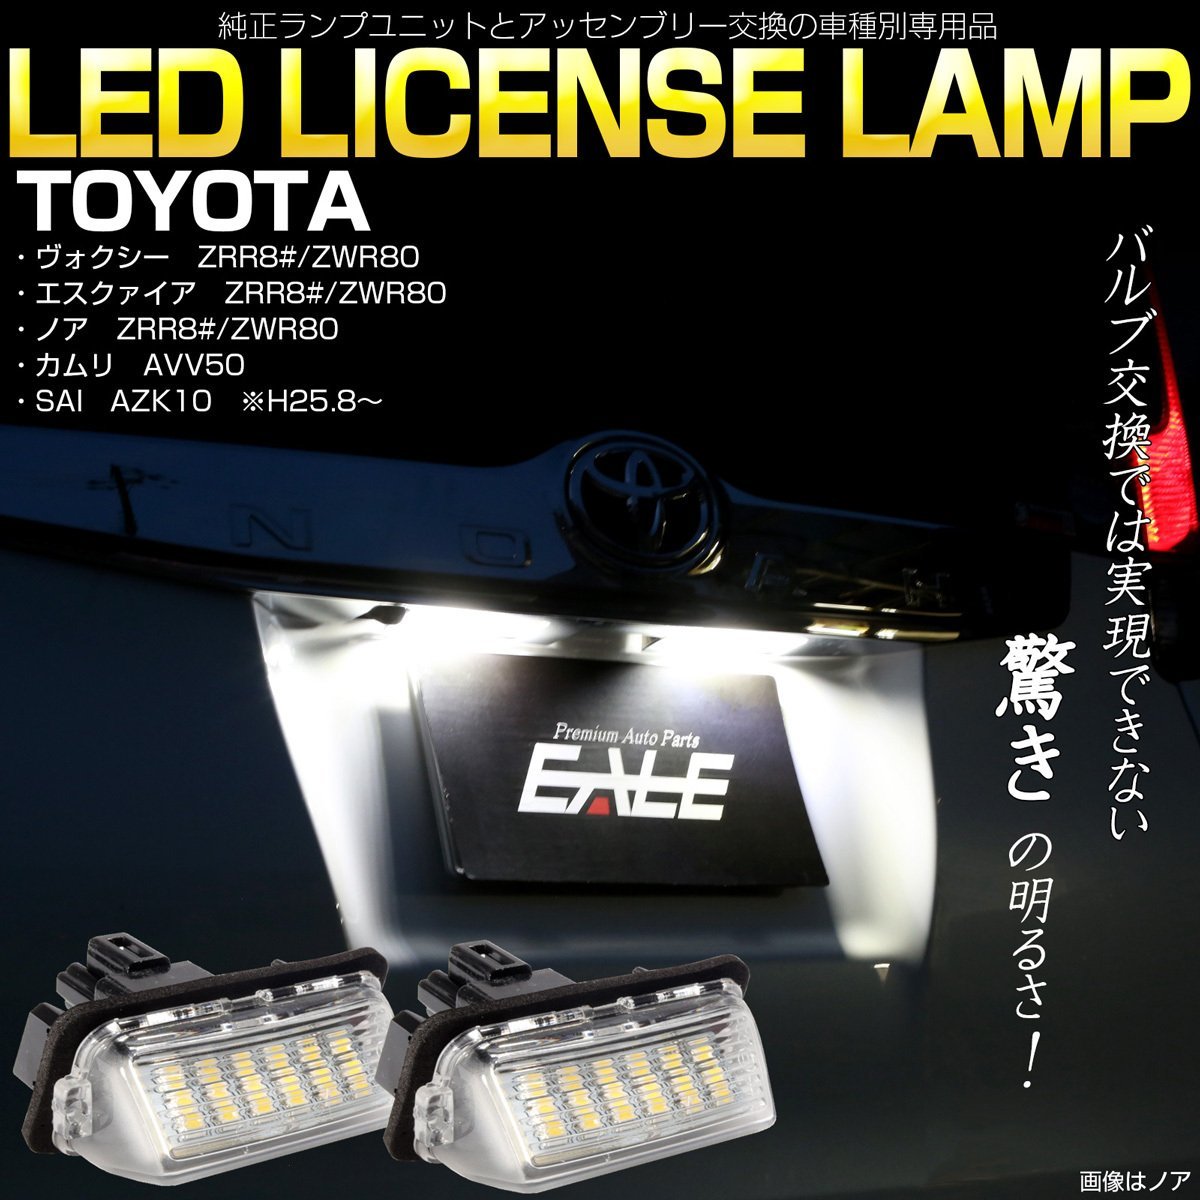 トヨタ SAI AZK10・カムリ AVV50 LED ライセンスランプ ハイブリッド対応 ナンバー灯 高輝度 ユニット交換タイプ R-208_画像1